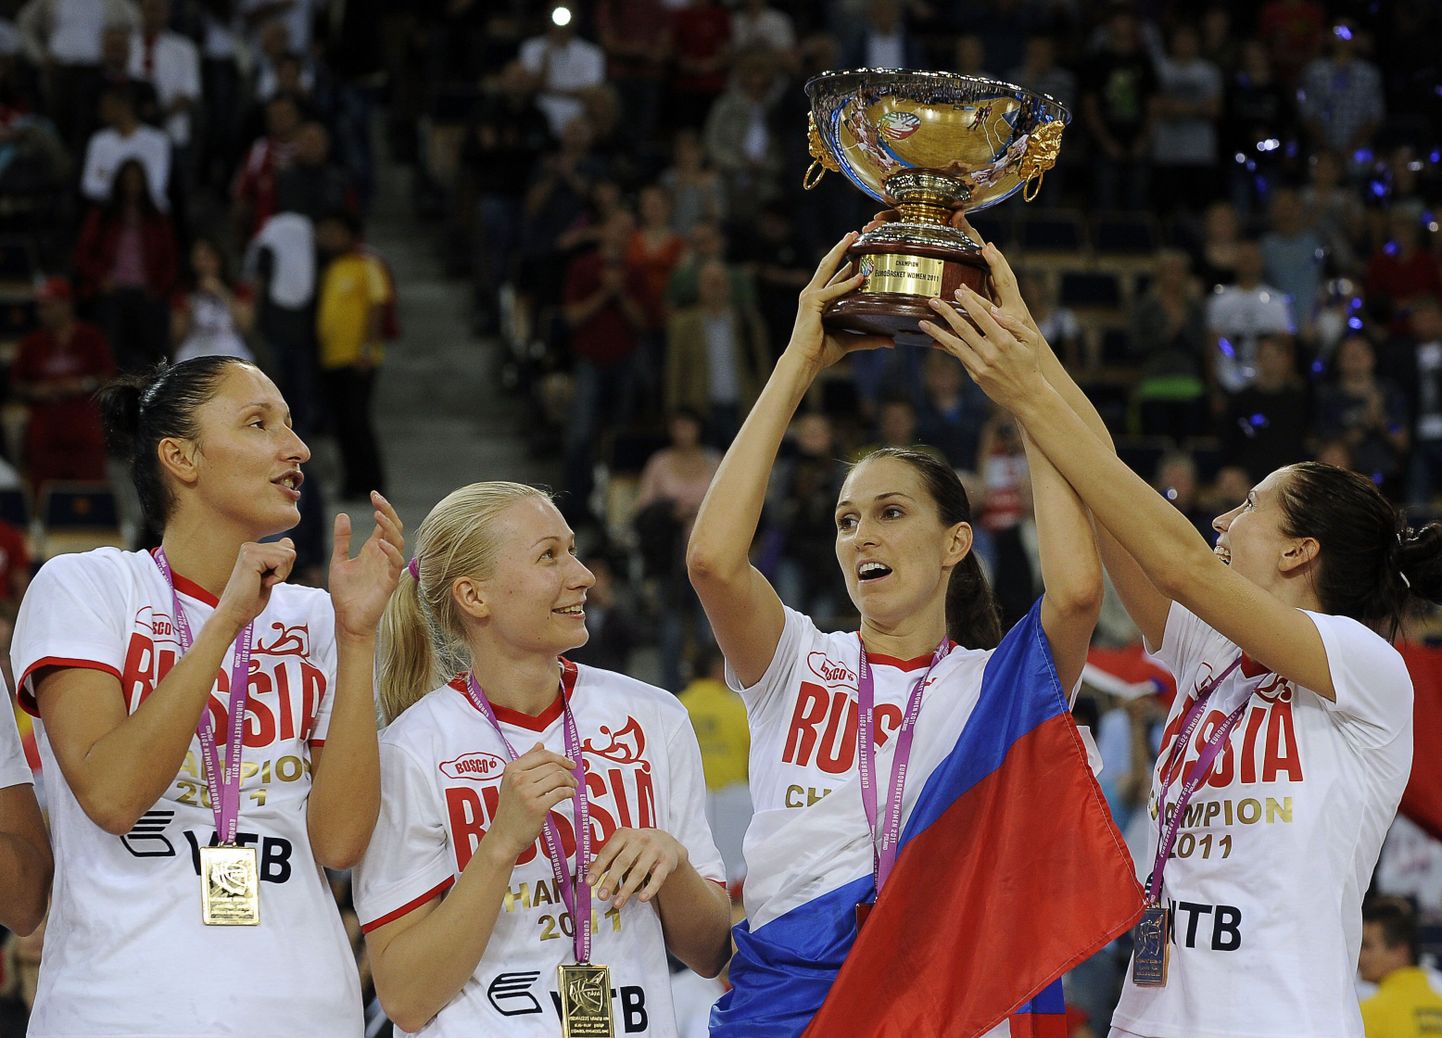 Venemaa naiskonna mängijad võidukarikaga.